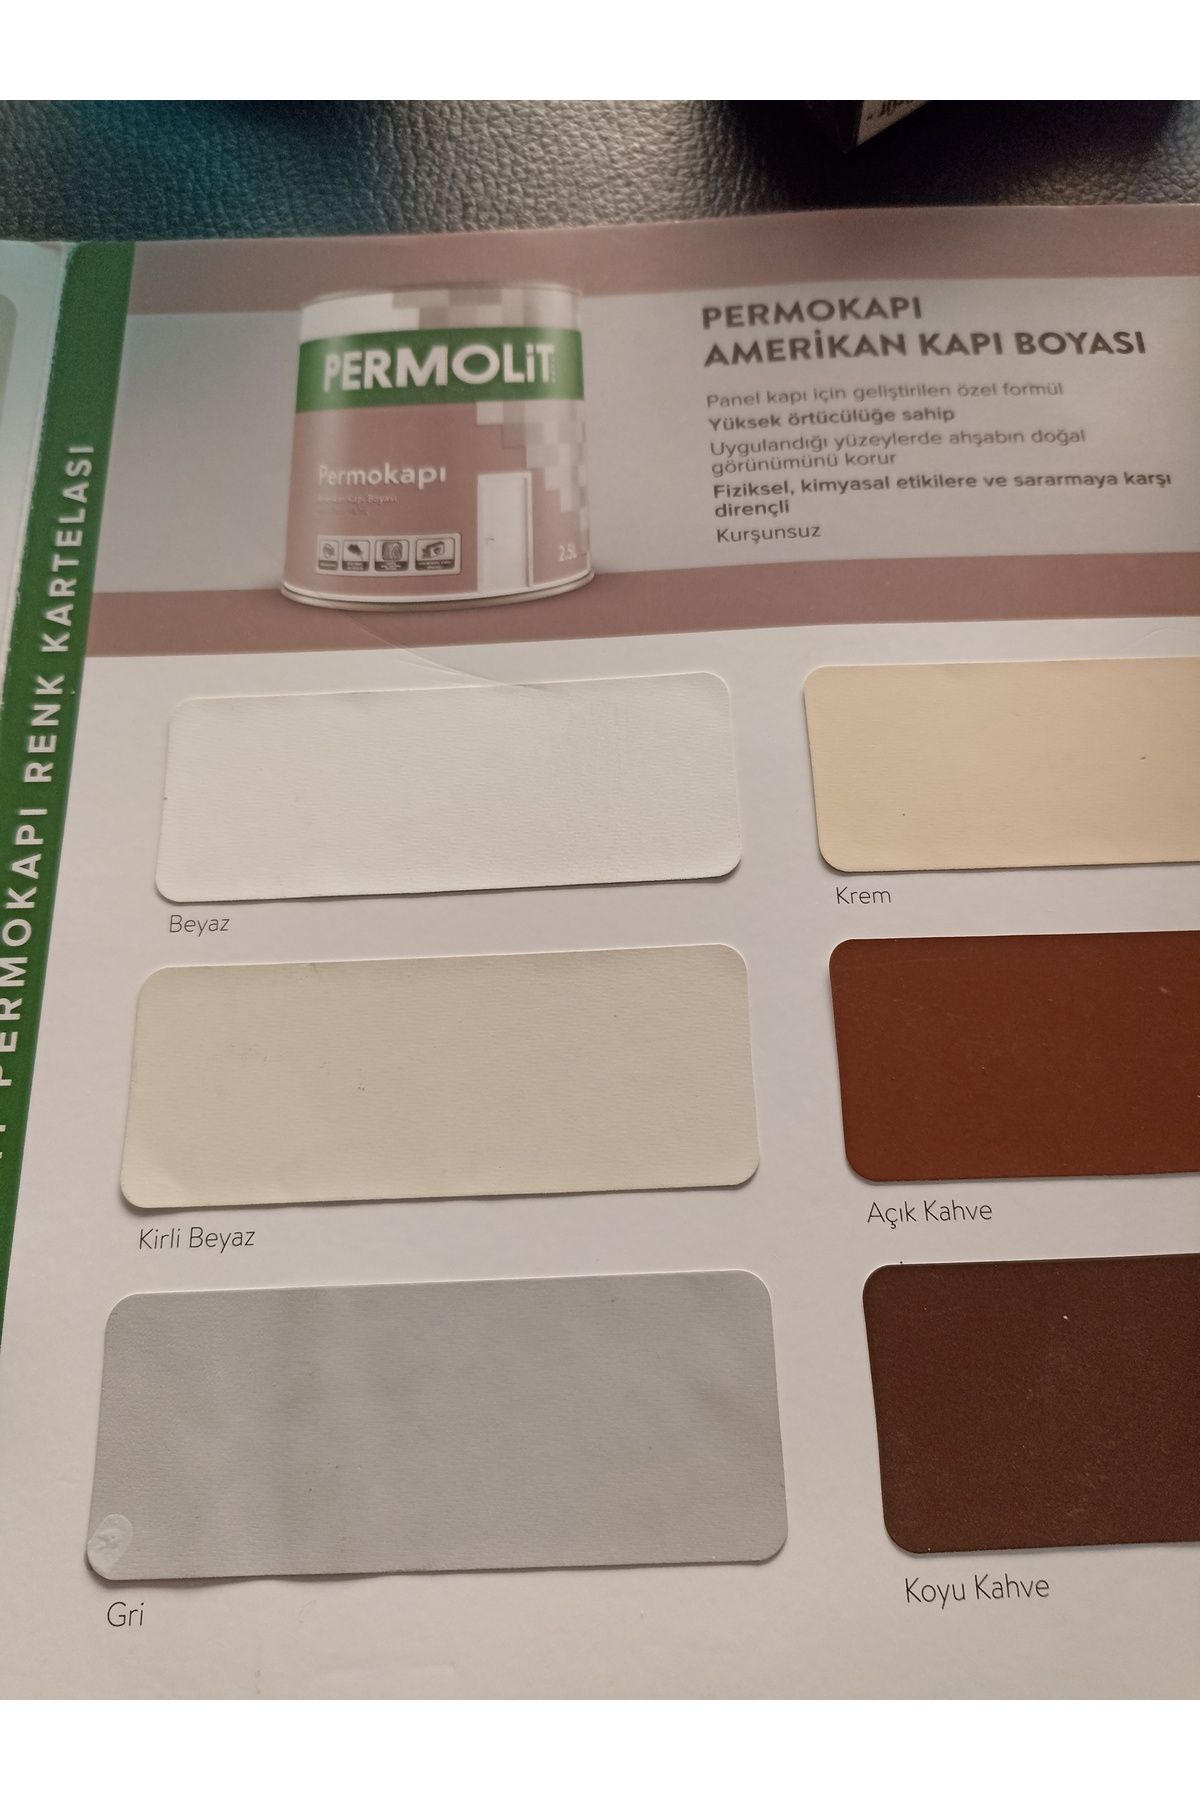 Permolit Amerikan kapı boyası 2.5 lt gri renk